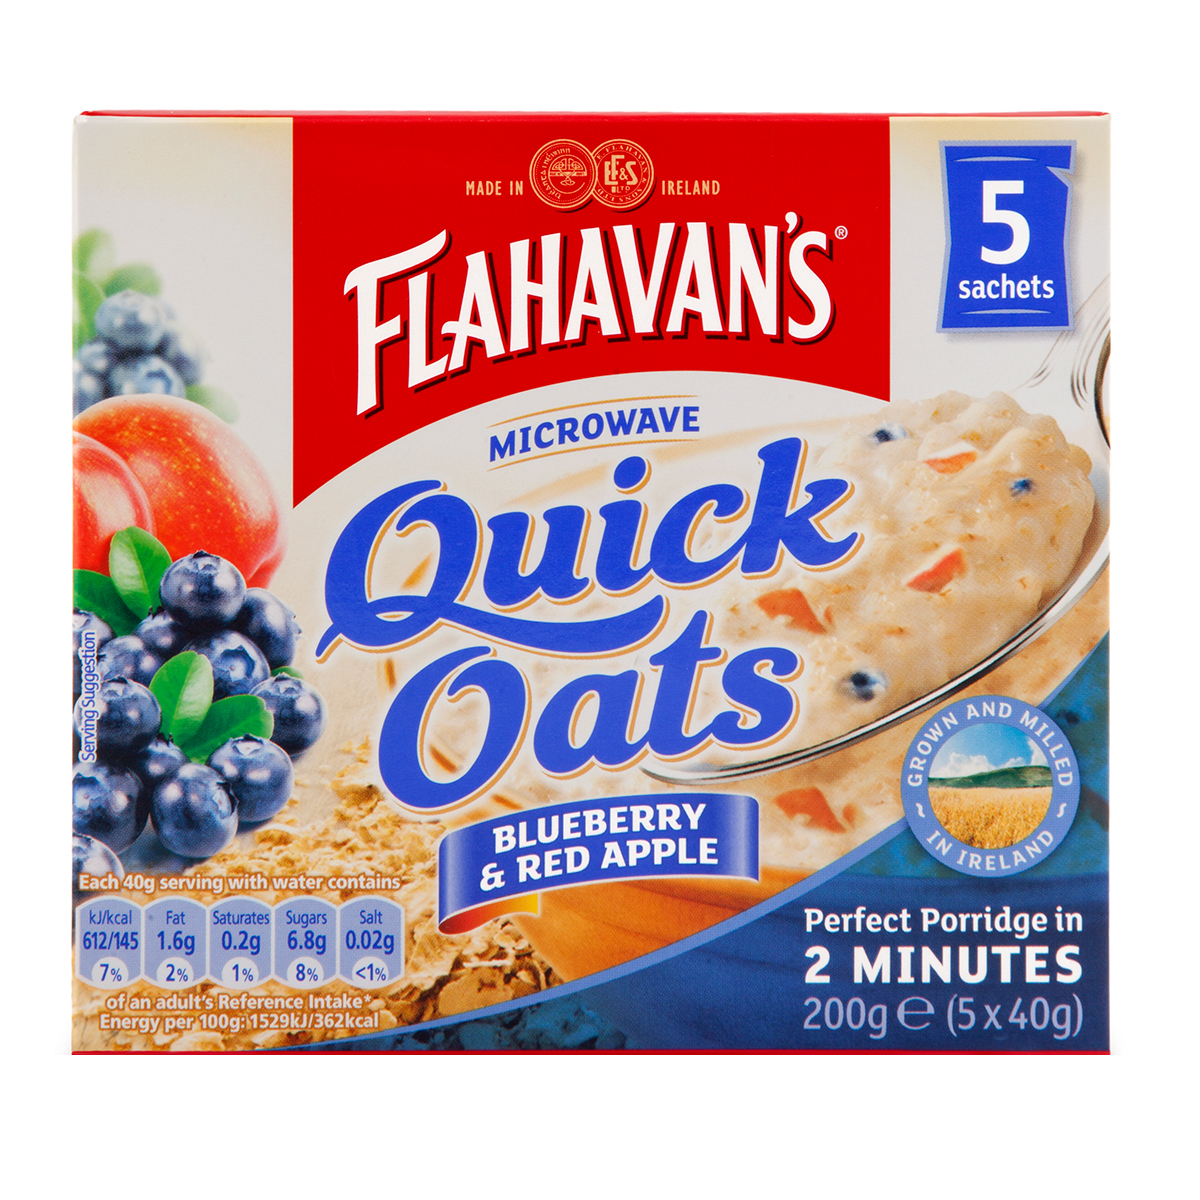 Flahavans organic jumbo oats